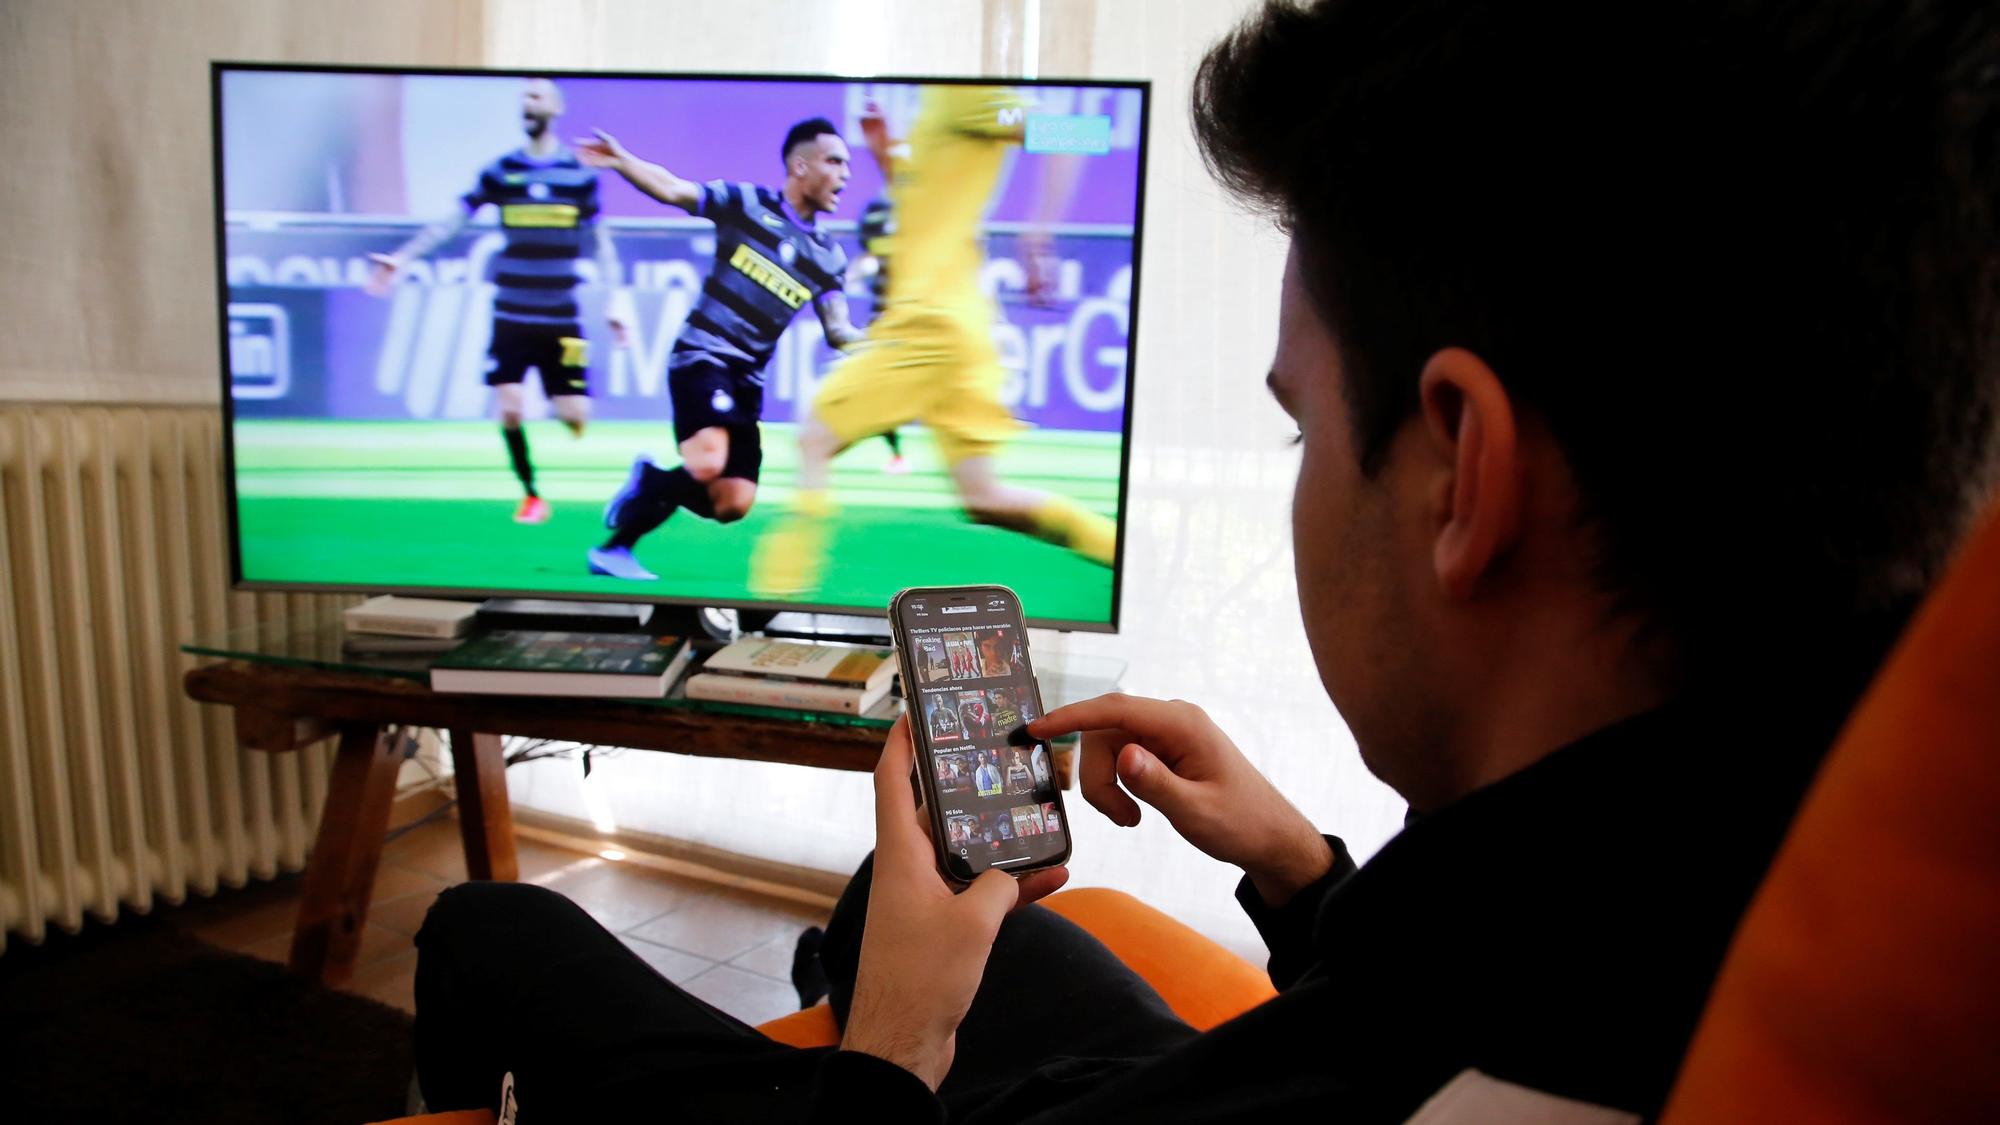 Un joven mira el móvil mientras en la televisión retransmiten un partido de fútbol.